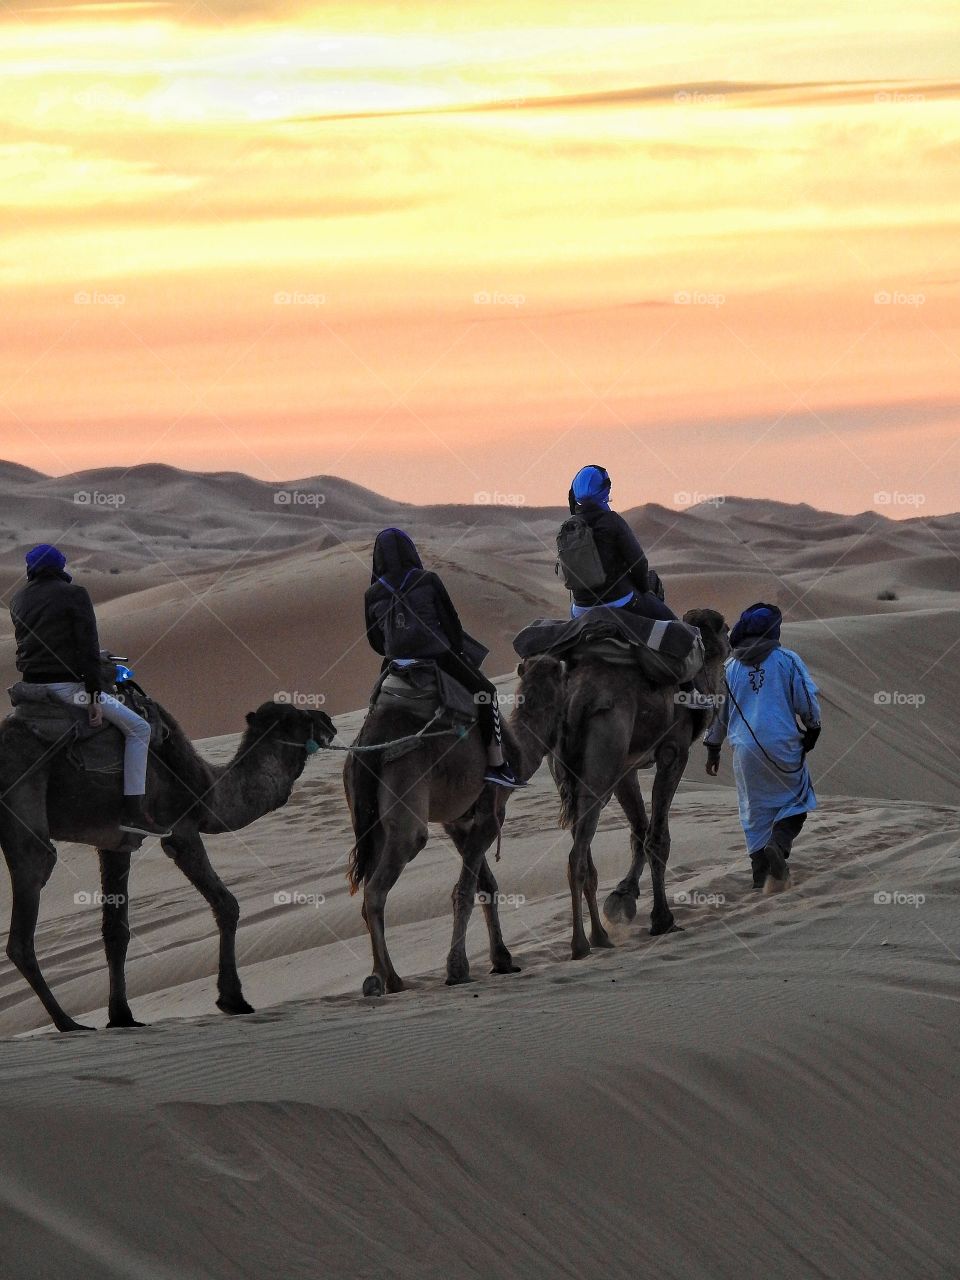 Riding in the Sahara desert